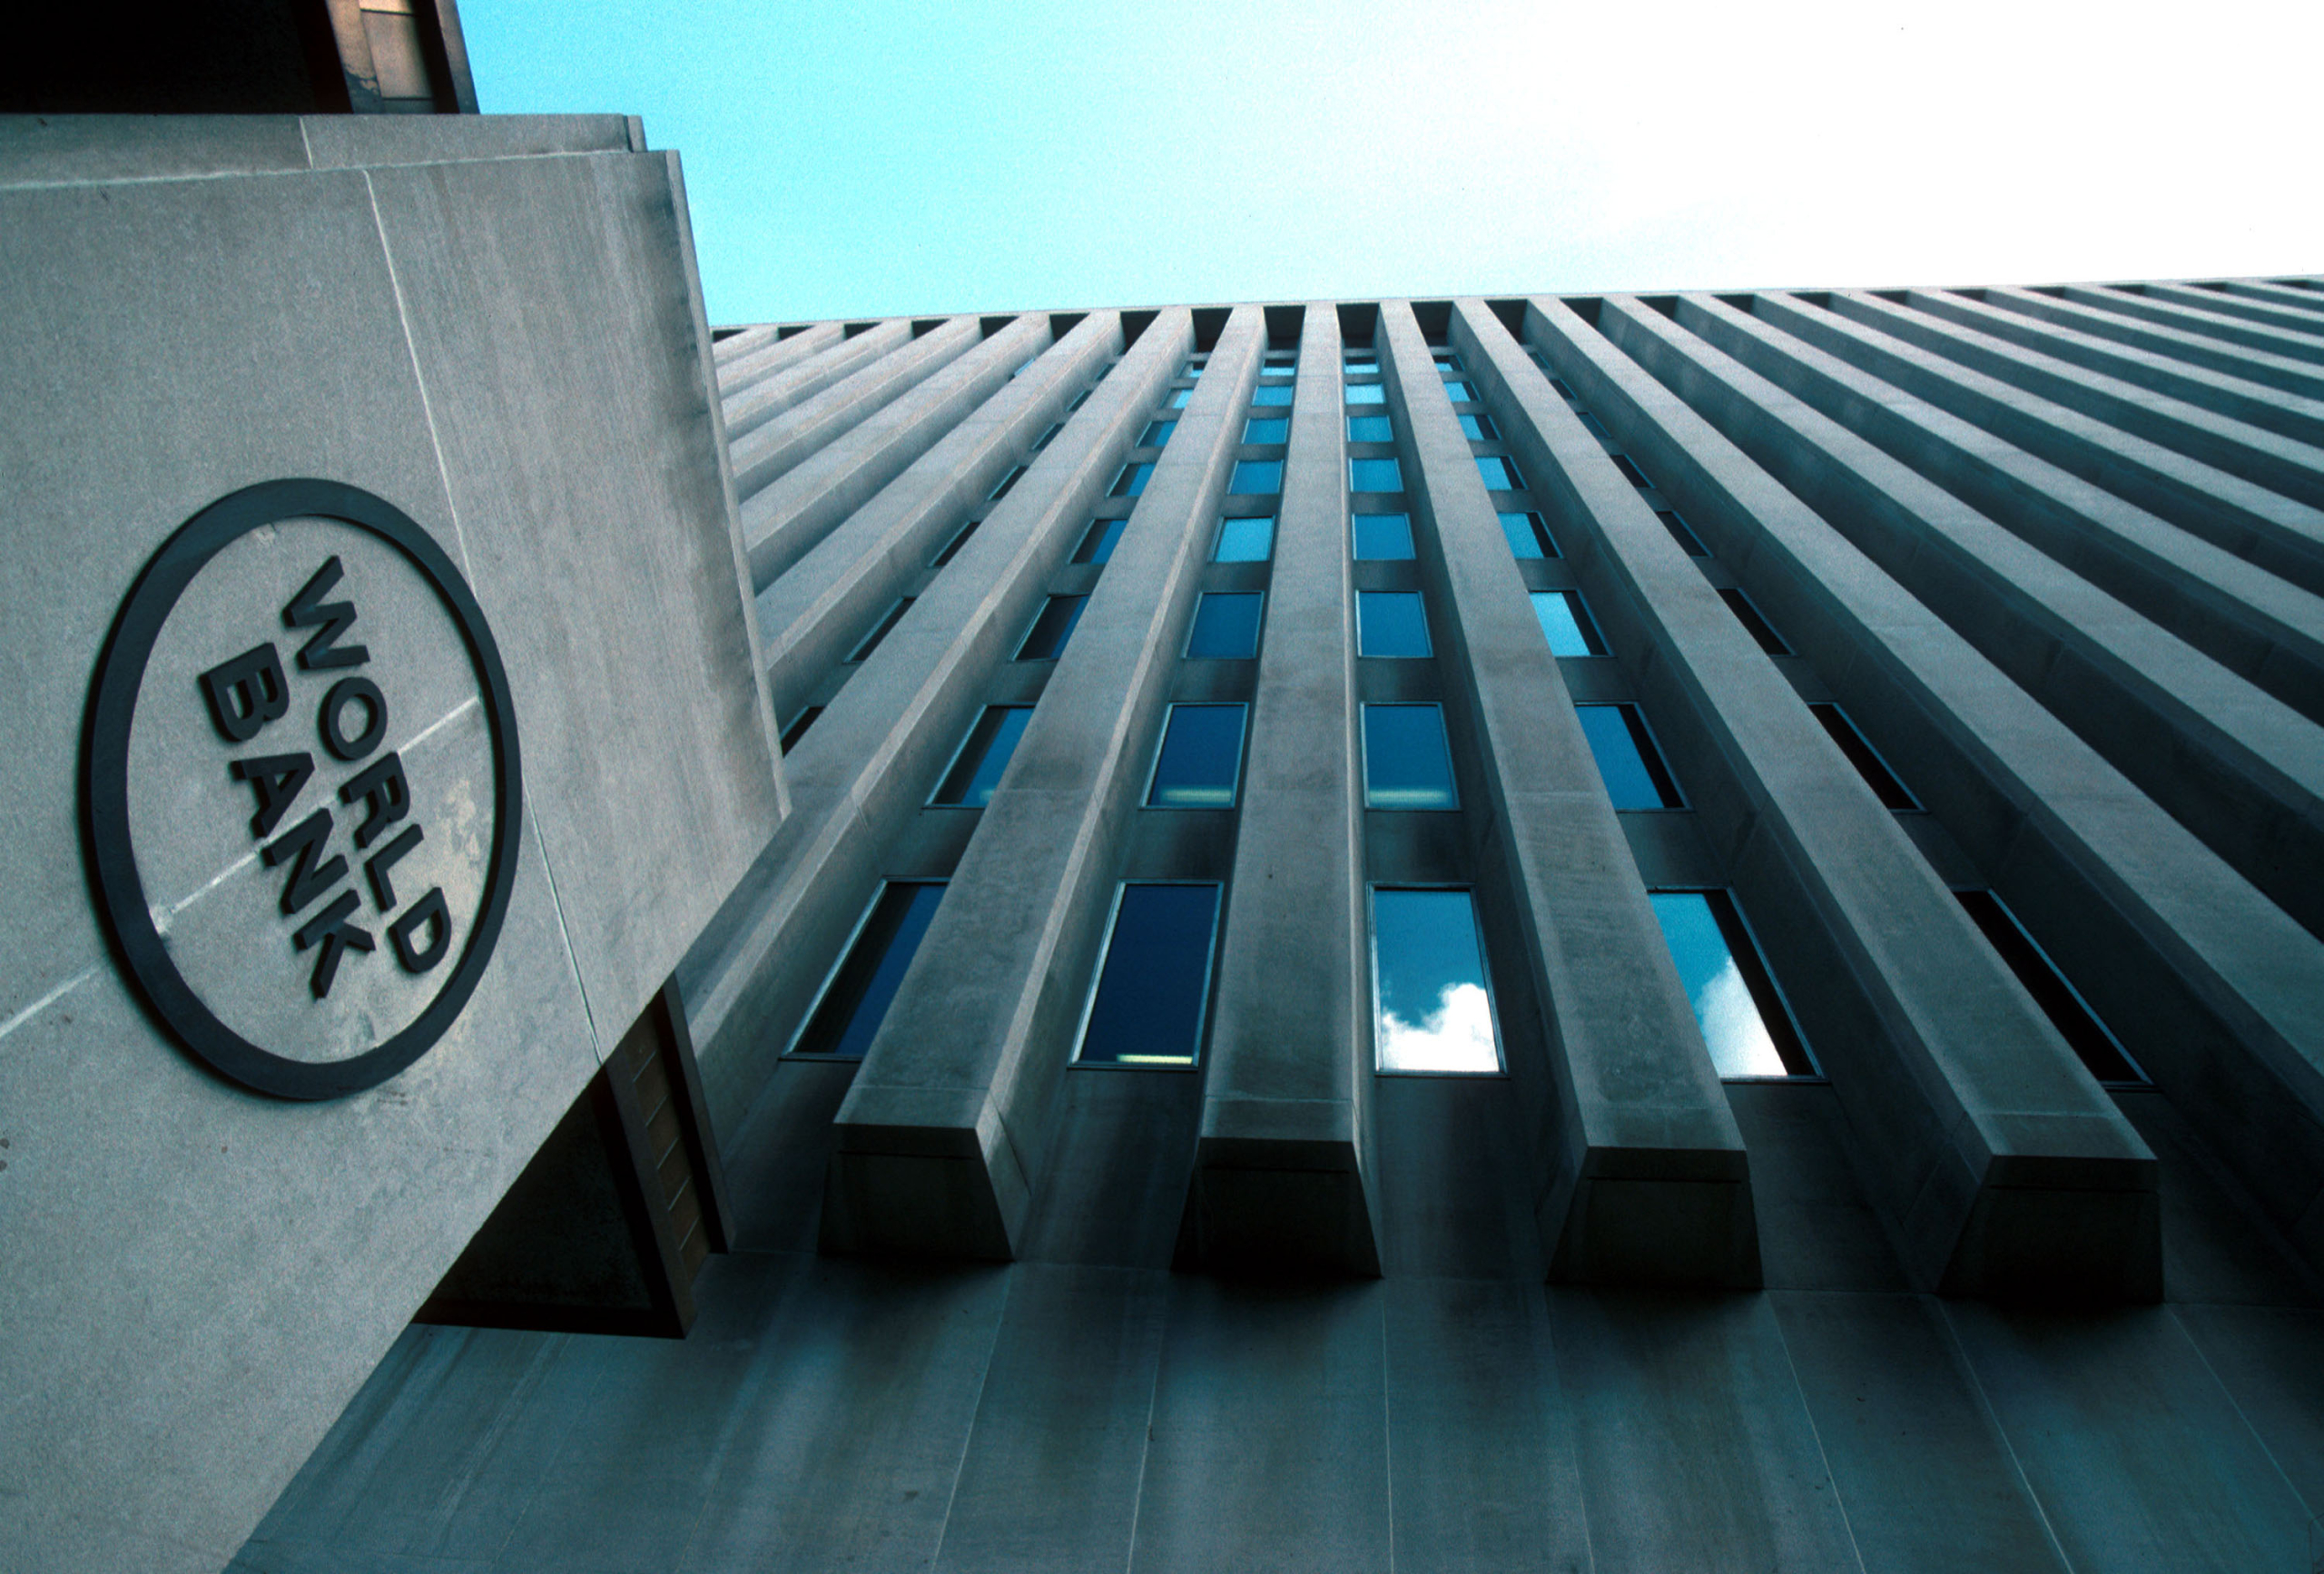 البنك الدولي “متفائل” بشأن معدلات نمو اقتصادات منطقة “مينا”